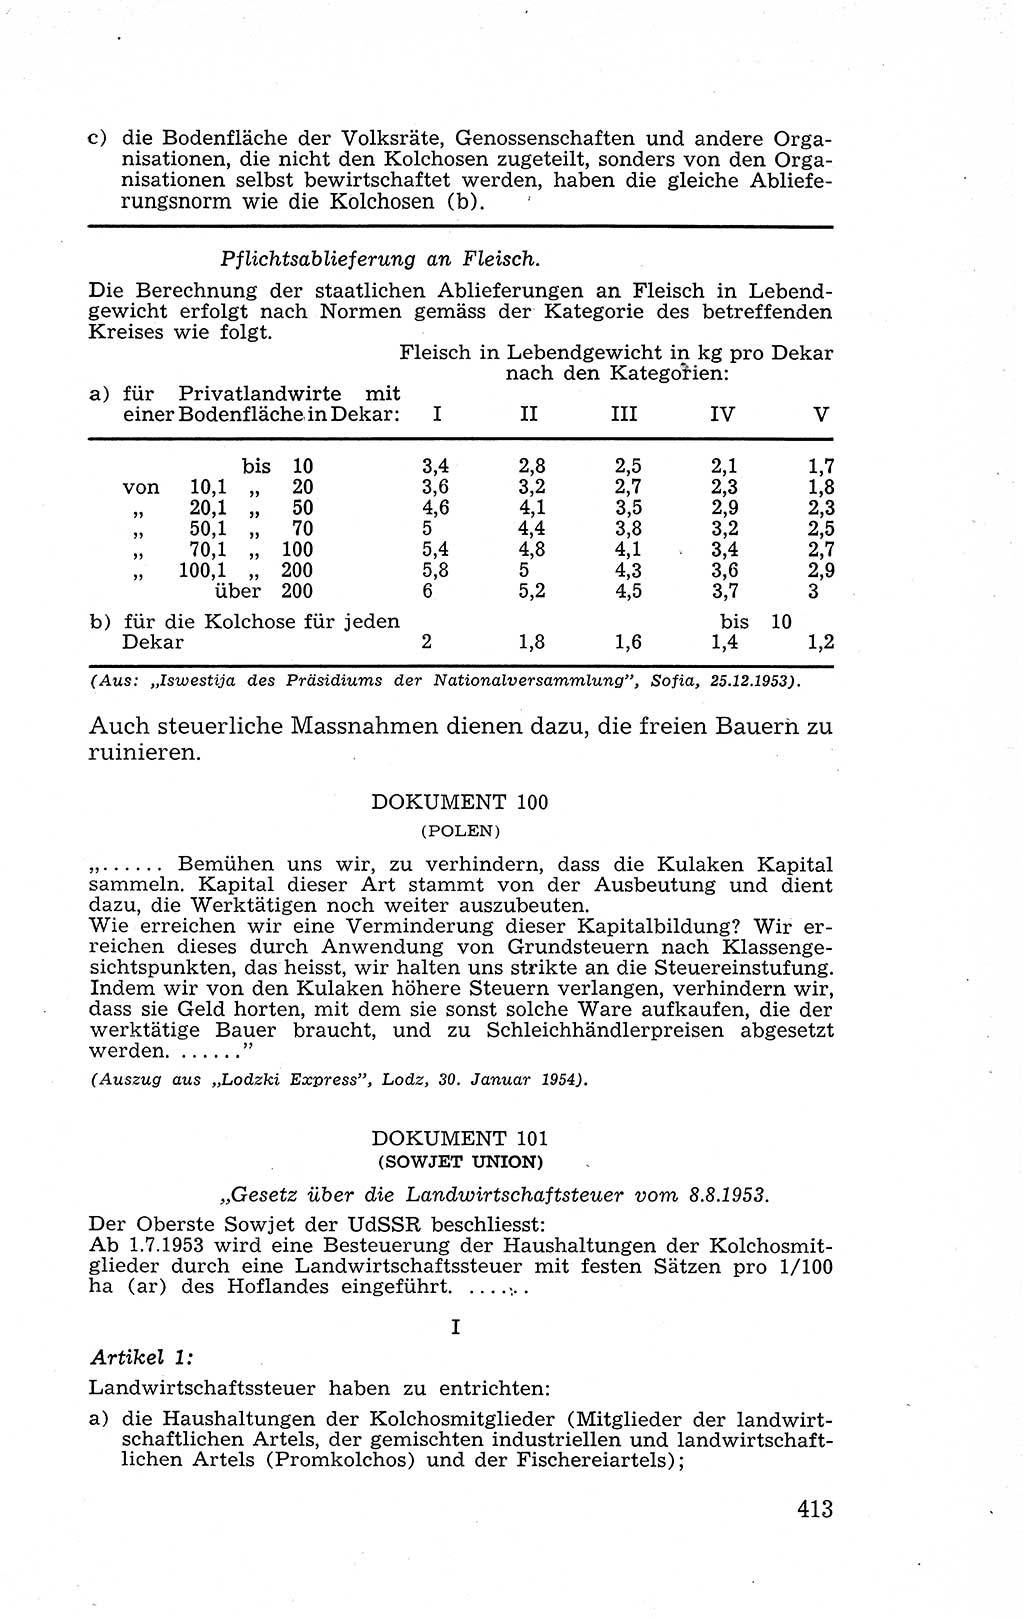 Recht in Fesseln, Dokumente, Internationale Juristen-Kommission [Bundesrepublik Deutschland (BRD)] 1955, Seite 413 (R. Dok. IJK BRD 1955, S. 413)